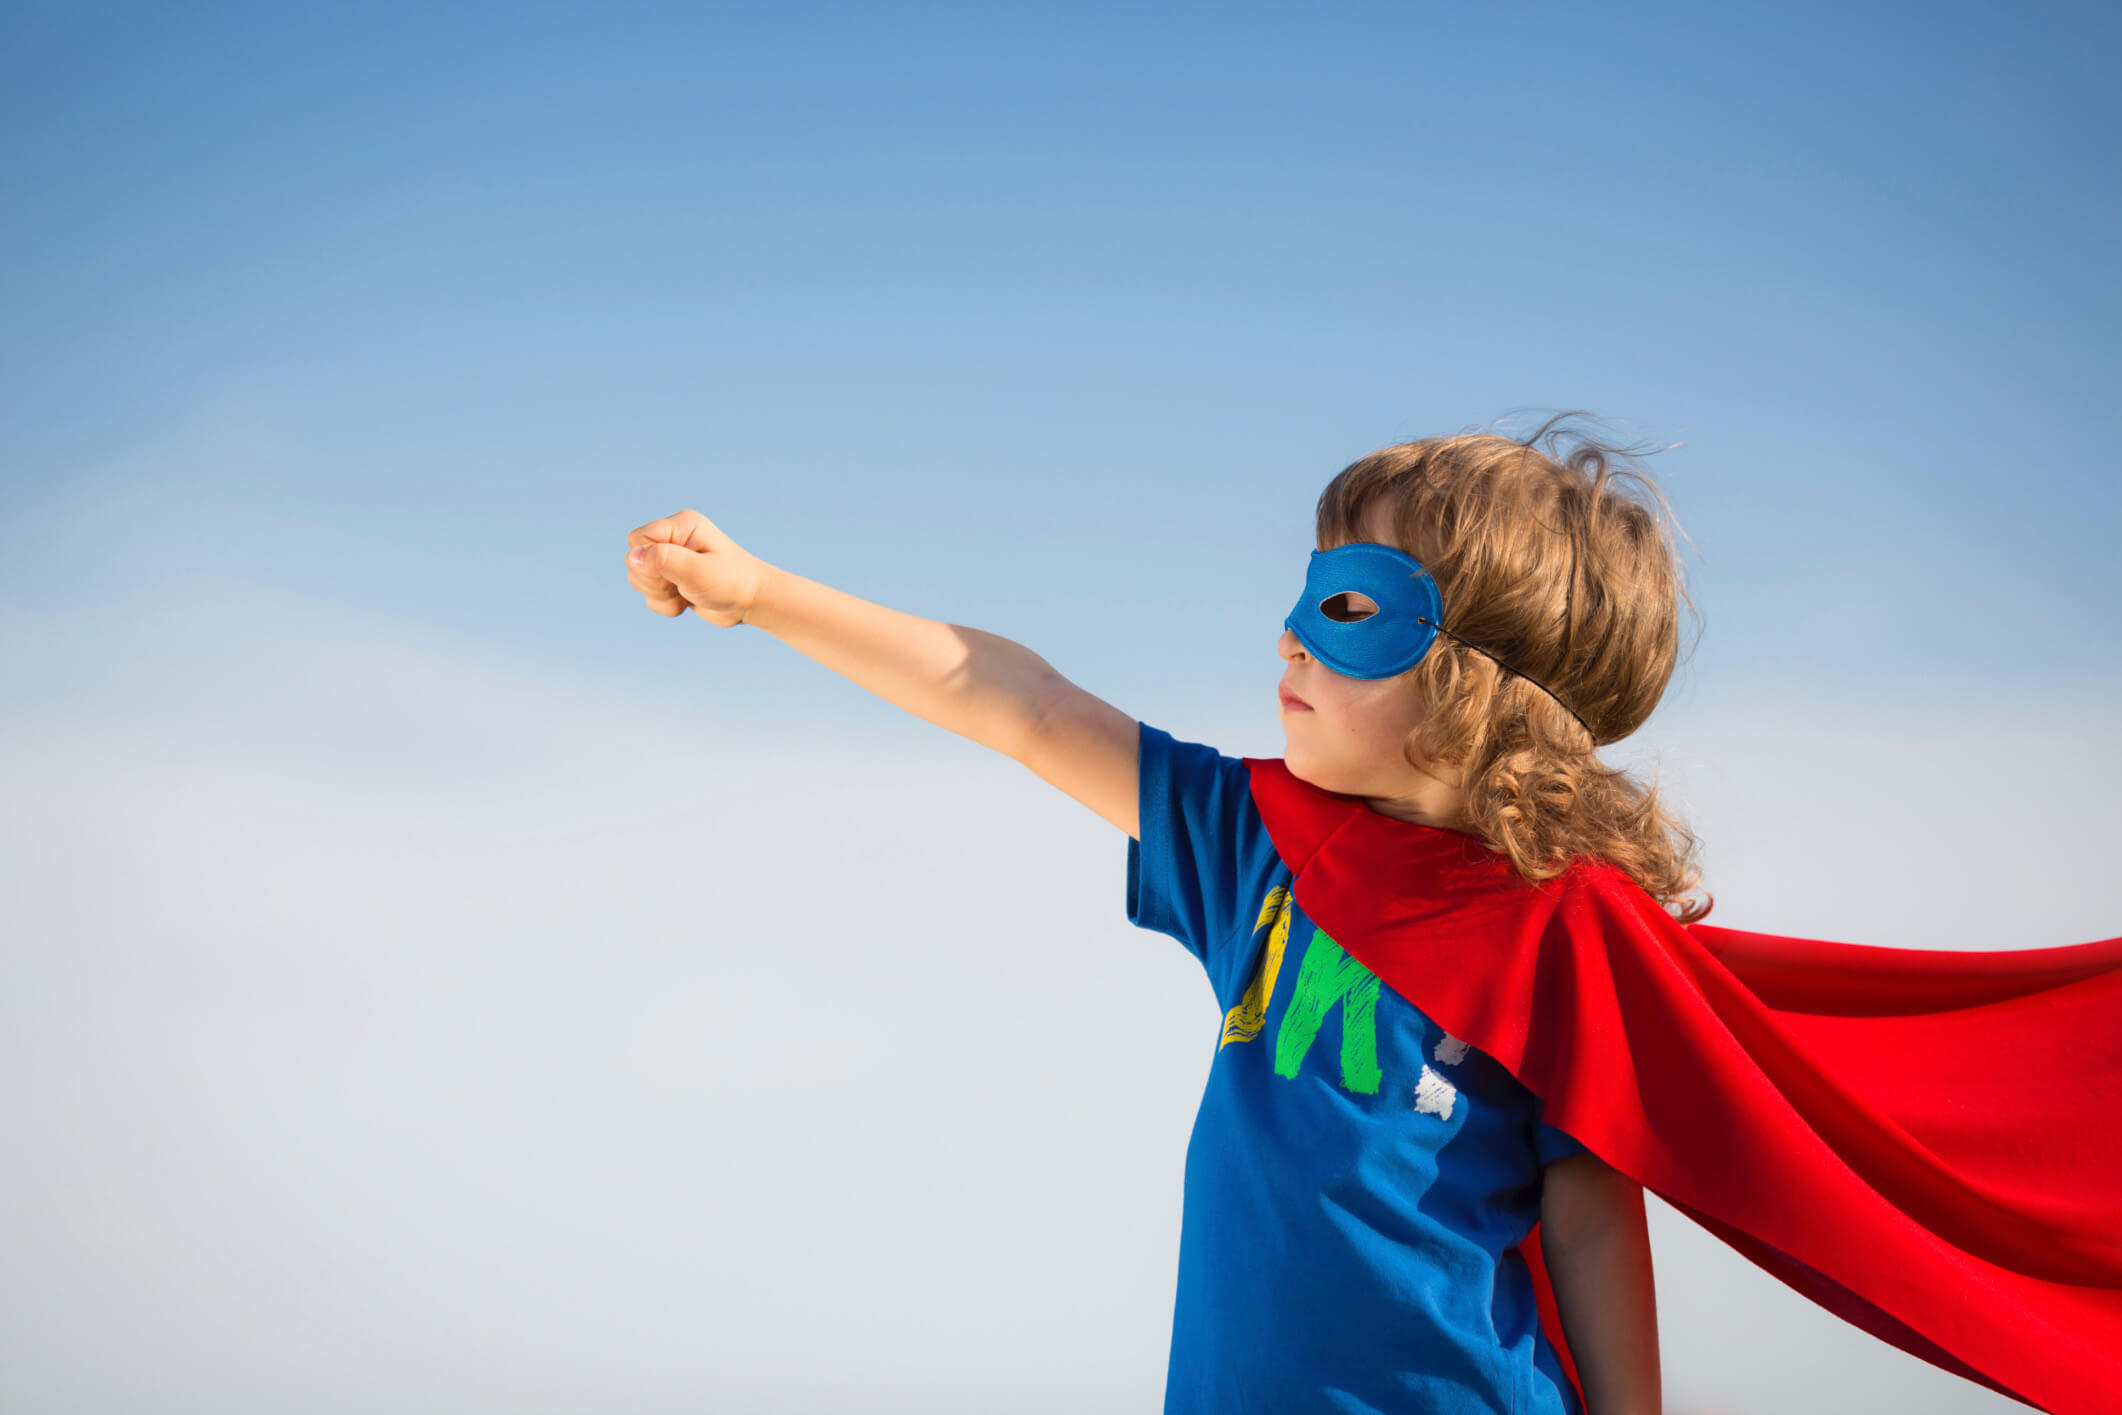 Child wearing superhero costume